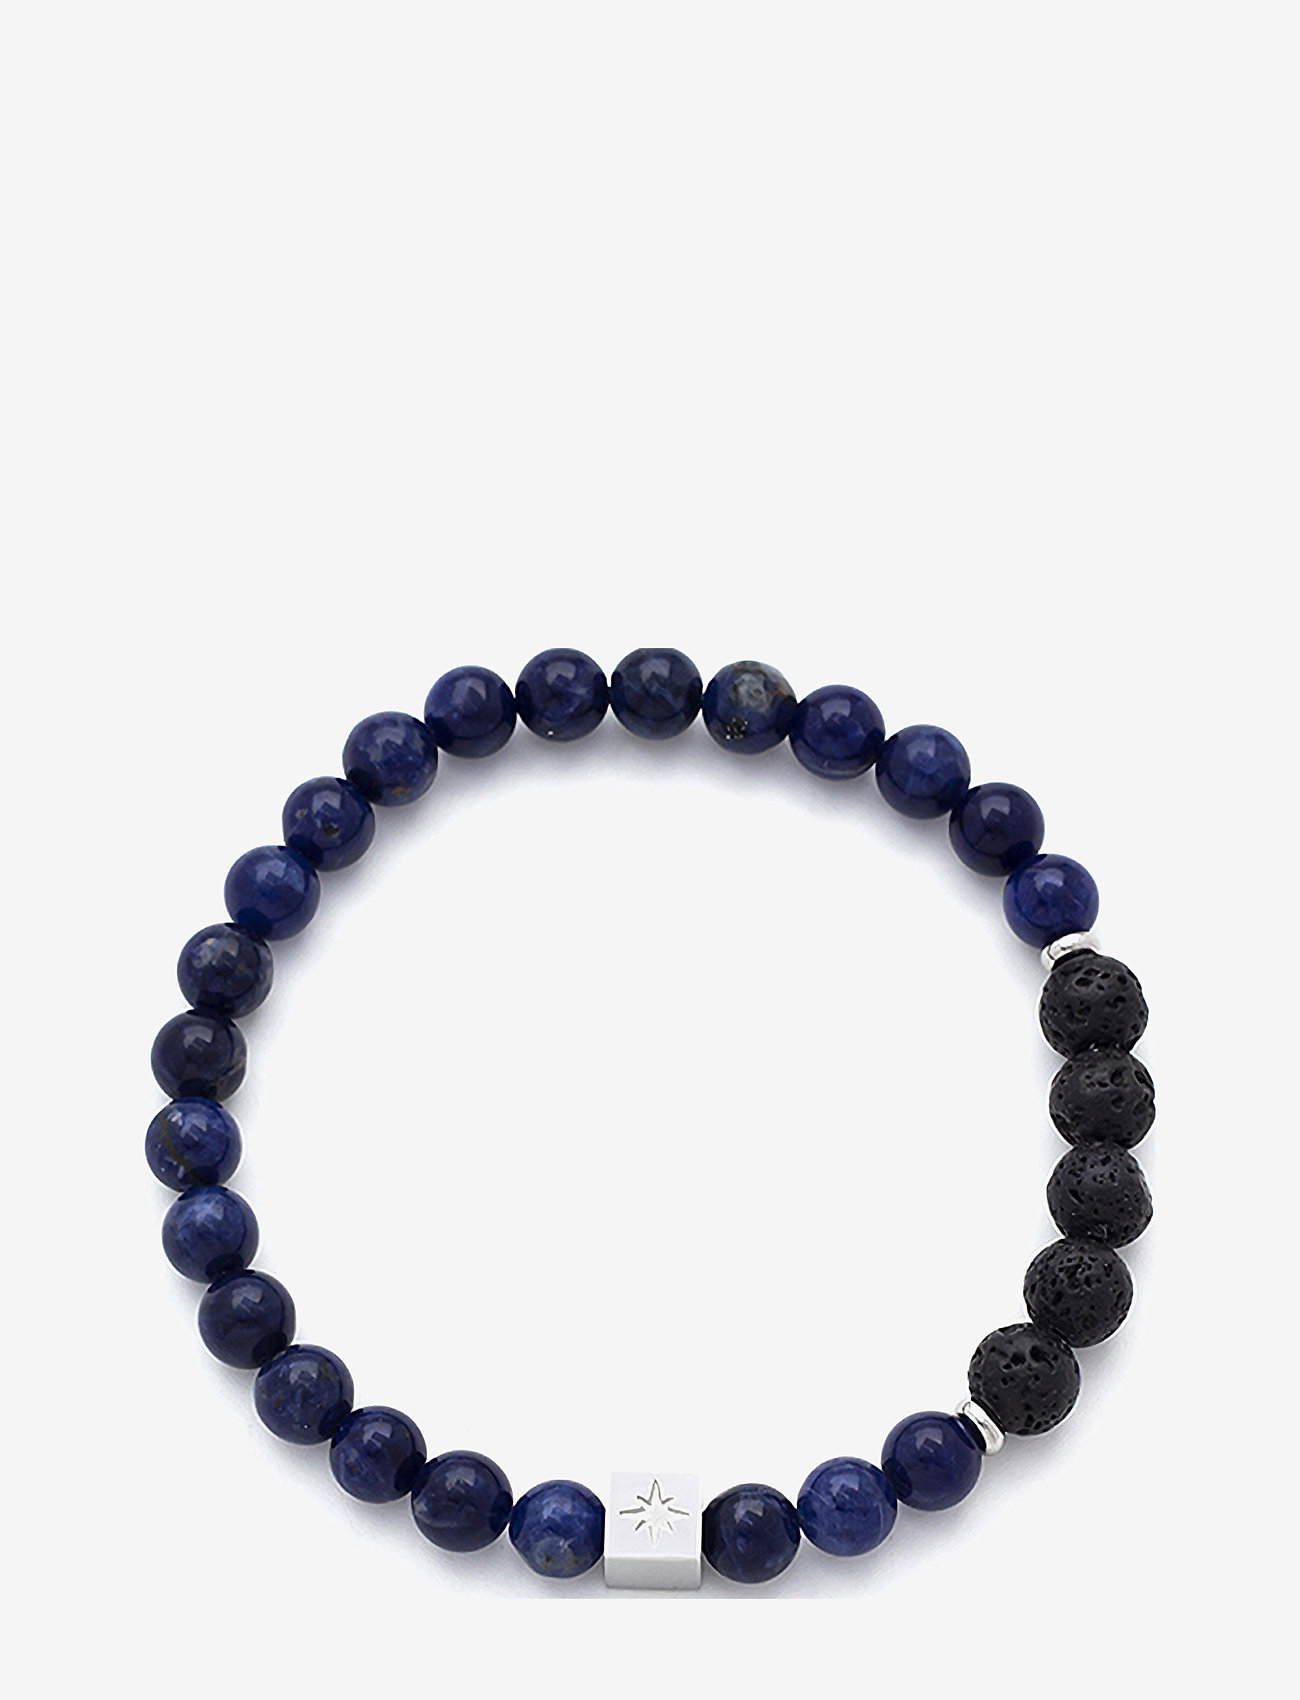 Samie - Samie - Bracelet with blue beads - birthday gifts - sws - 0